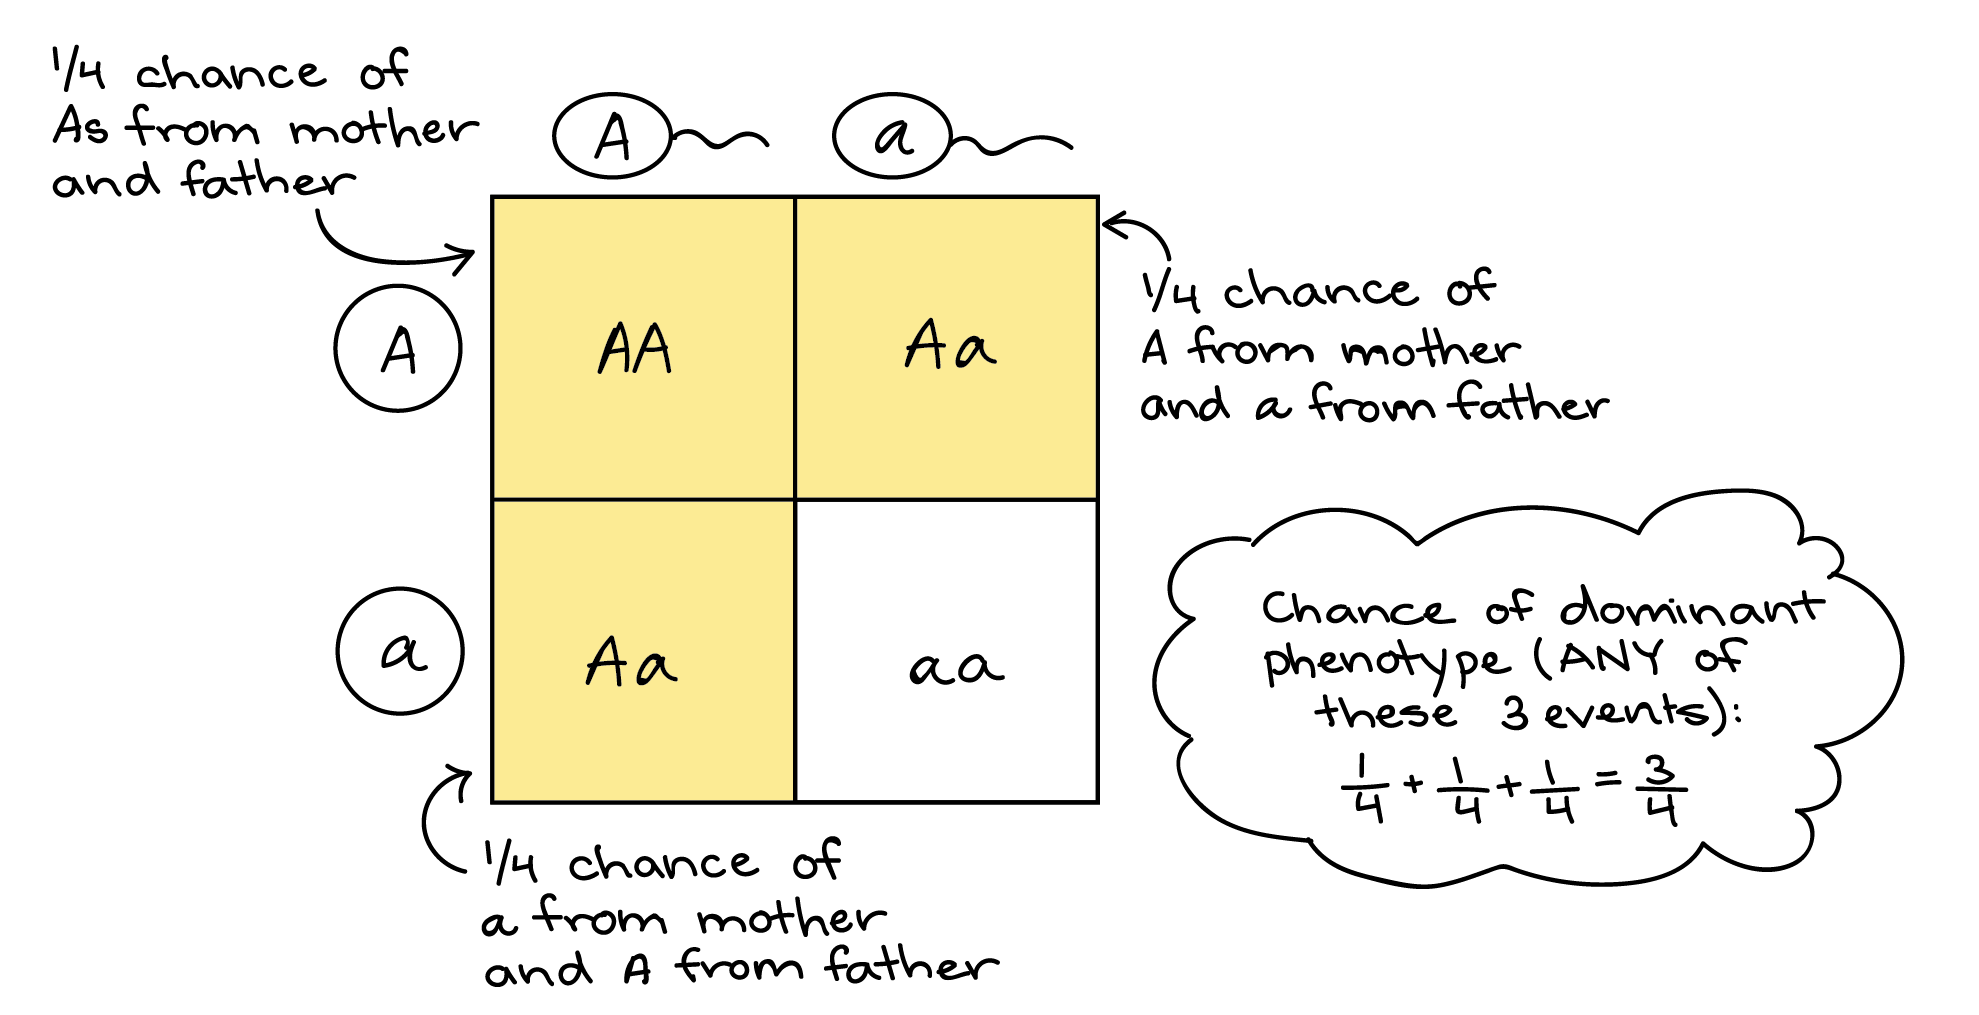 Ilustración de cómo un cuadrado de Punnett puede representar la regla de suma. Cuadrado de Punnett: ||A|a-|-|-|-A|**AA**|**AA**A||**AA**|AA Las casillas **en negrita** representan eventos que dan como resultado un fenotipo dominante (genotipo AA o Aa). En uno, un espermatozoide A se combina con un óvulo A. En otro, un espermatozoide A se combina con un óvulo, y en un tercio, un espermatozoide se combina con un óvulo A. Cada evento tiene una probabilidad de 1/4 de suceder (1 de cada 4 cajas en la plaza Punnett). La probabilidad de que ocurra cualquiera de estos tres eventos es de 1/4+1/4+1/4 = 3/4.